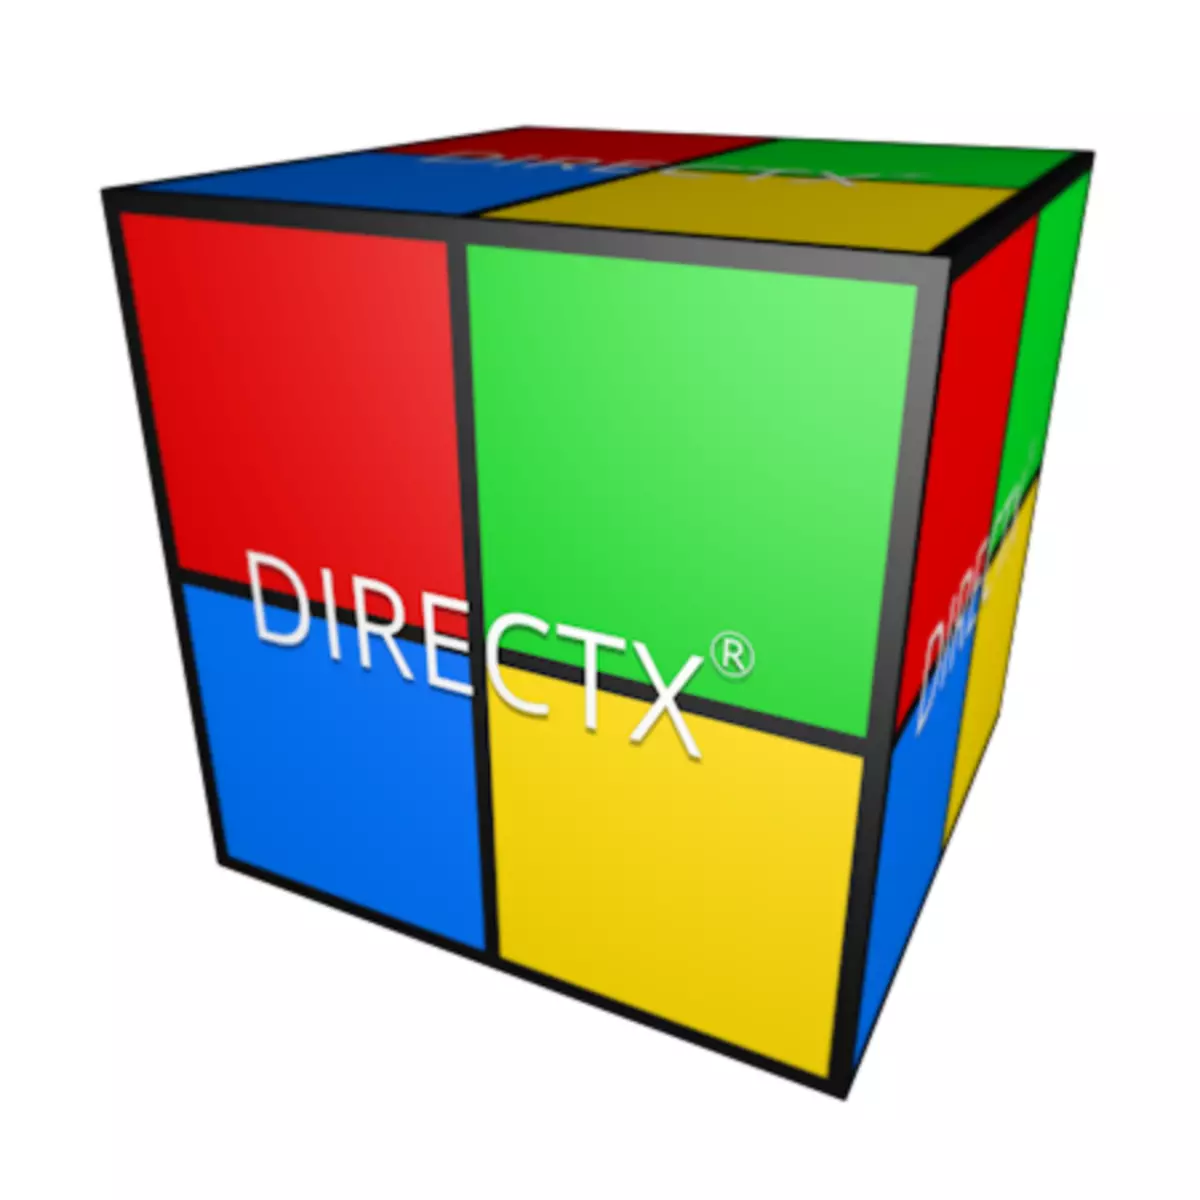 Whati Directx ji bo Windows 7 çêtir e